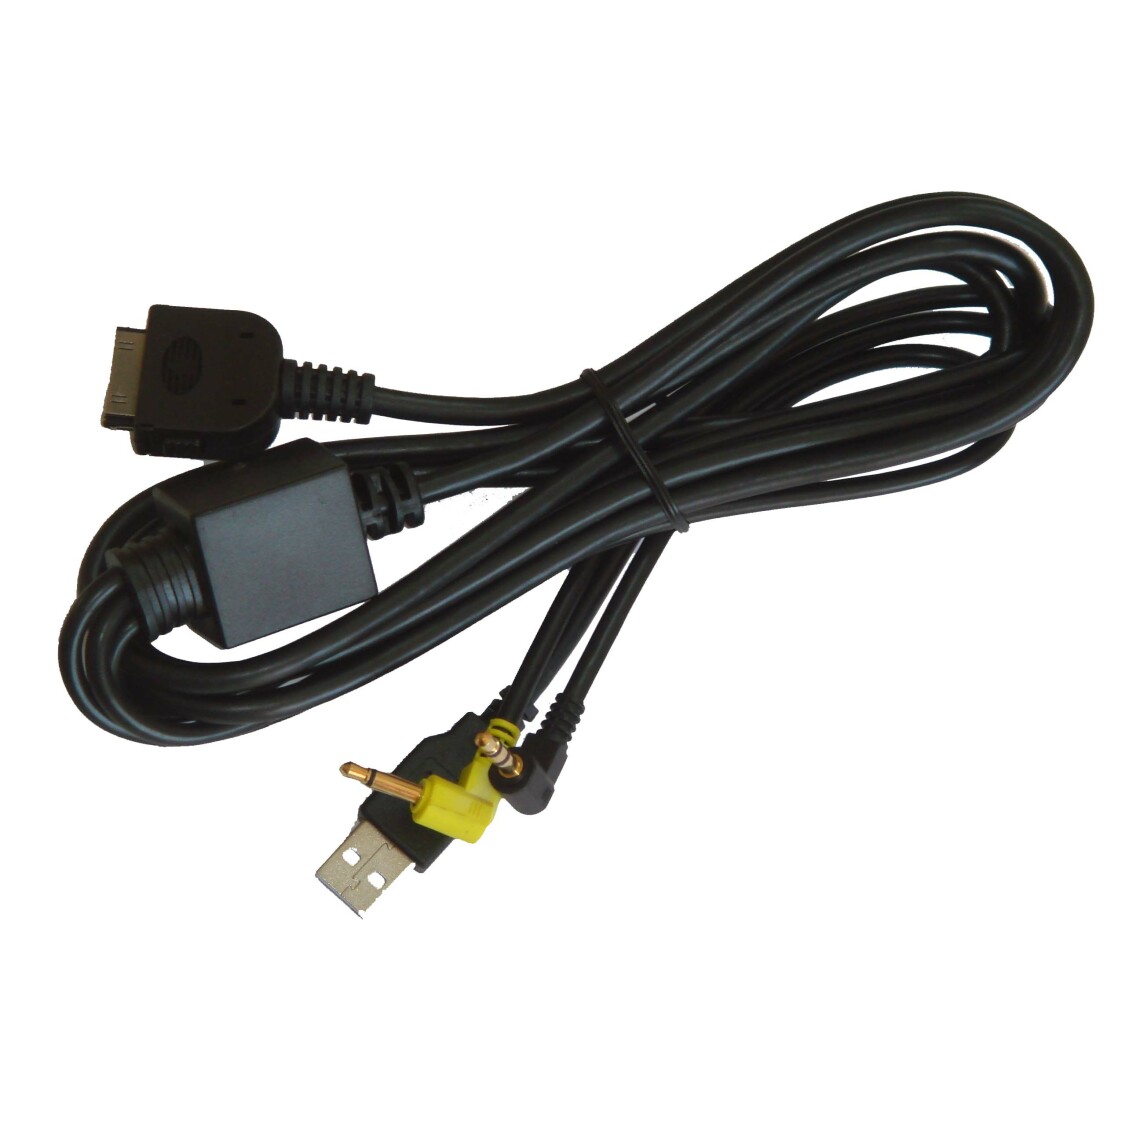 Vhbw - vhbw Câble adaptateur de ligne AUX Radio remplace KCA-IP300V pour voiture, véhicule, USB, prise jack AV Line-In - Alimentation modulaire